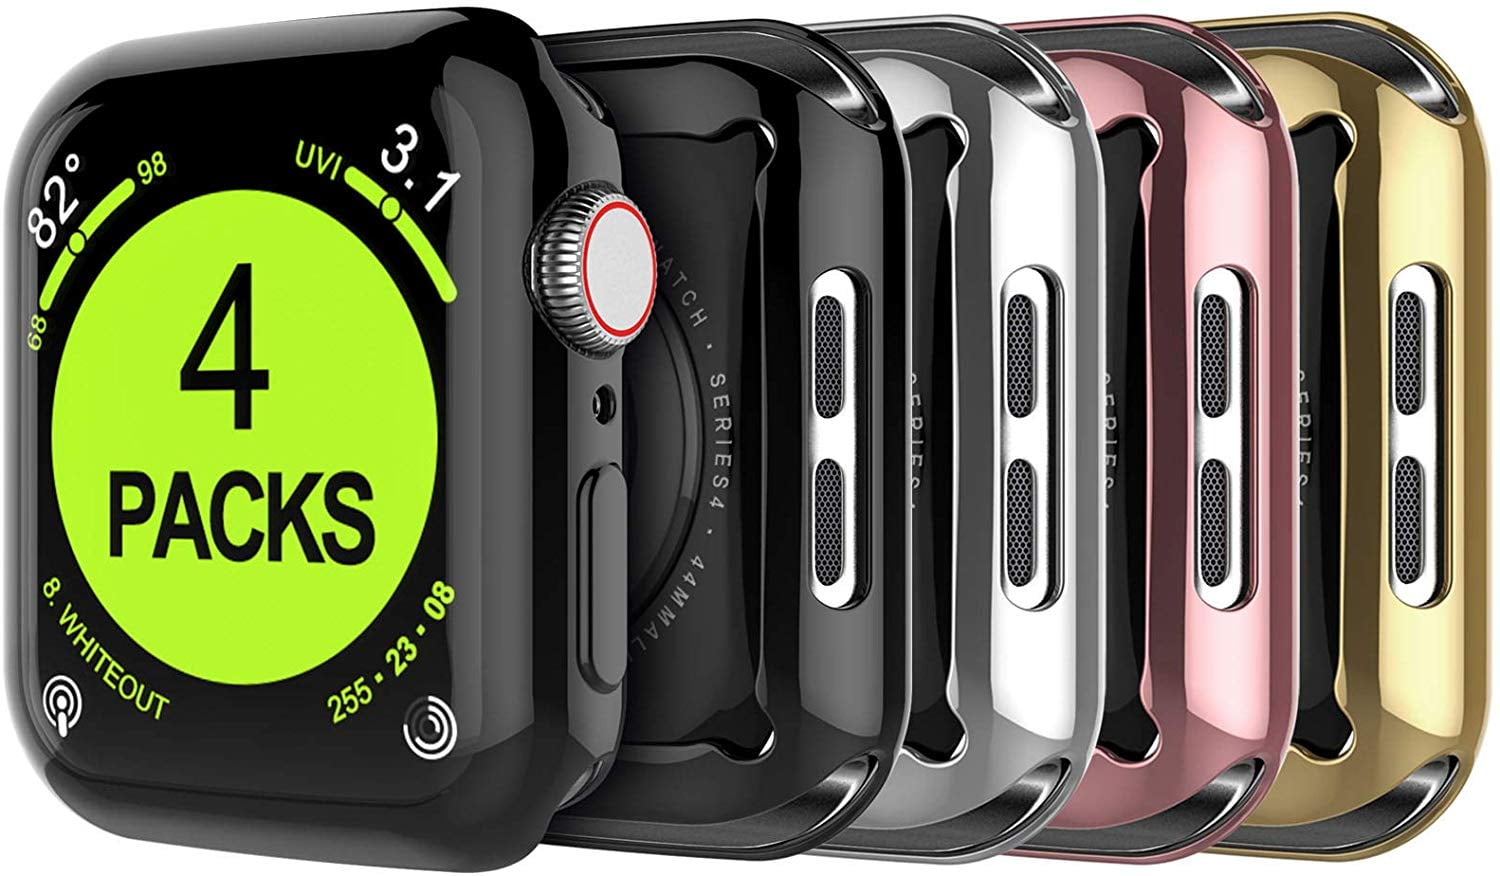 series 3 apple watch compatible phones